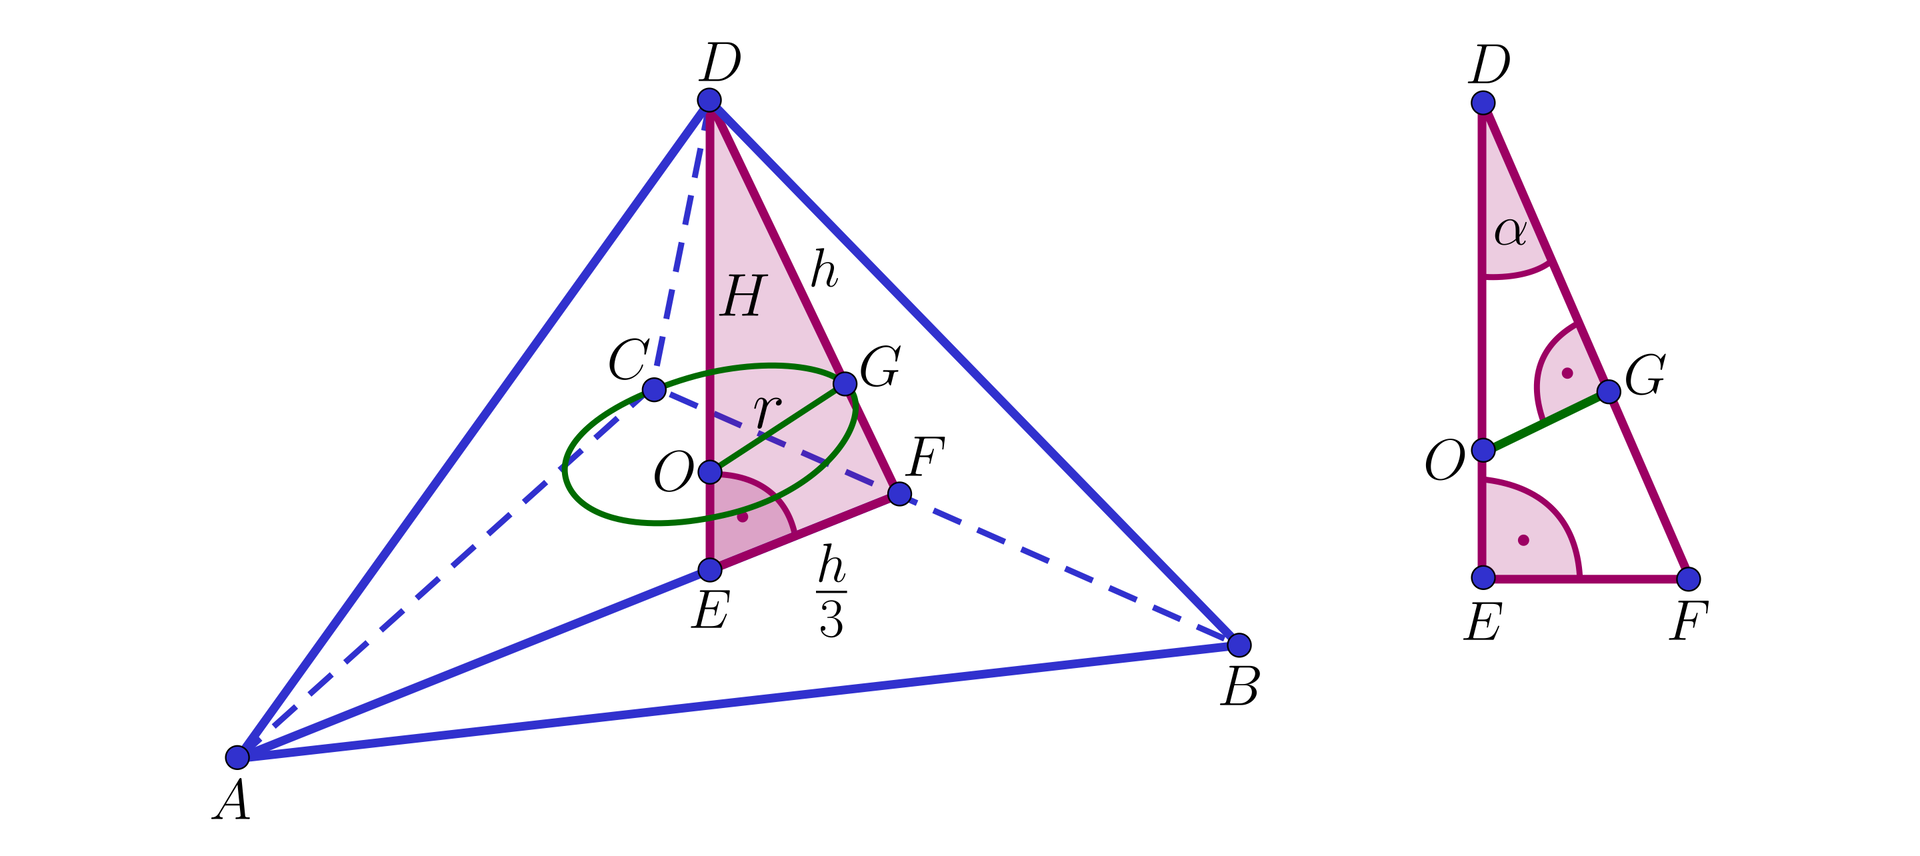 Na ilustracji przedstawiono czworościan foremny o podstawie A B C i wierzchołku D. W czworościan wpisano kulę o środku w punkcie O. Z wierzchołka D opuszczono wysokość czworościanu, której spodek leży na wysokości A F podstawy A B C. Zacieniowano trójkąt prostokątny D E F, którego przyprostokątna E F ma długość h3. Przeciwprostokątna D F stanowi wysokość ściany bocznej B C D. Na przyprostokątnej E D zaznaczono punkt O oraz na przeciwprostokątnej D F zaznaczono punkt G. Odcinek łączący punkty O i G stanowi promień kuli wpisanej w czworościan. Najbardziej po prawej przedstawiono zacieniowany trójkąt D E F, wewnątrz którego zaznaczono odcinek O G, prostopadły do przeciwprostokątnej D F. Kąt E D F oznaczono alfa.